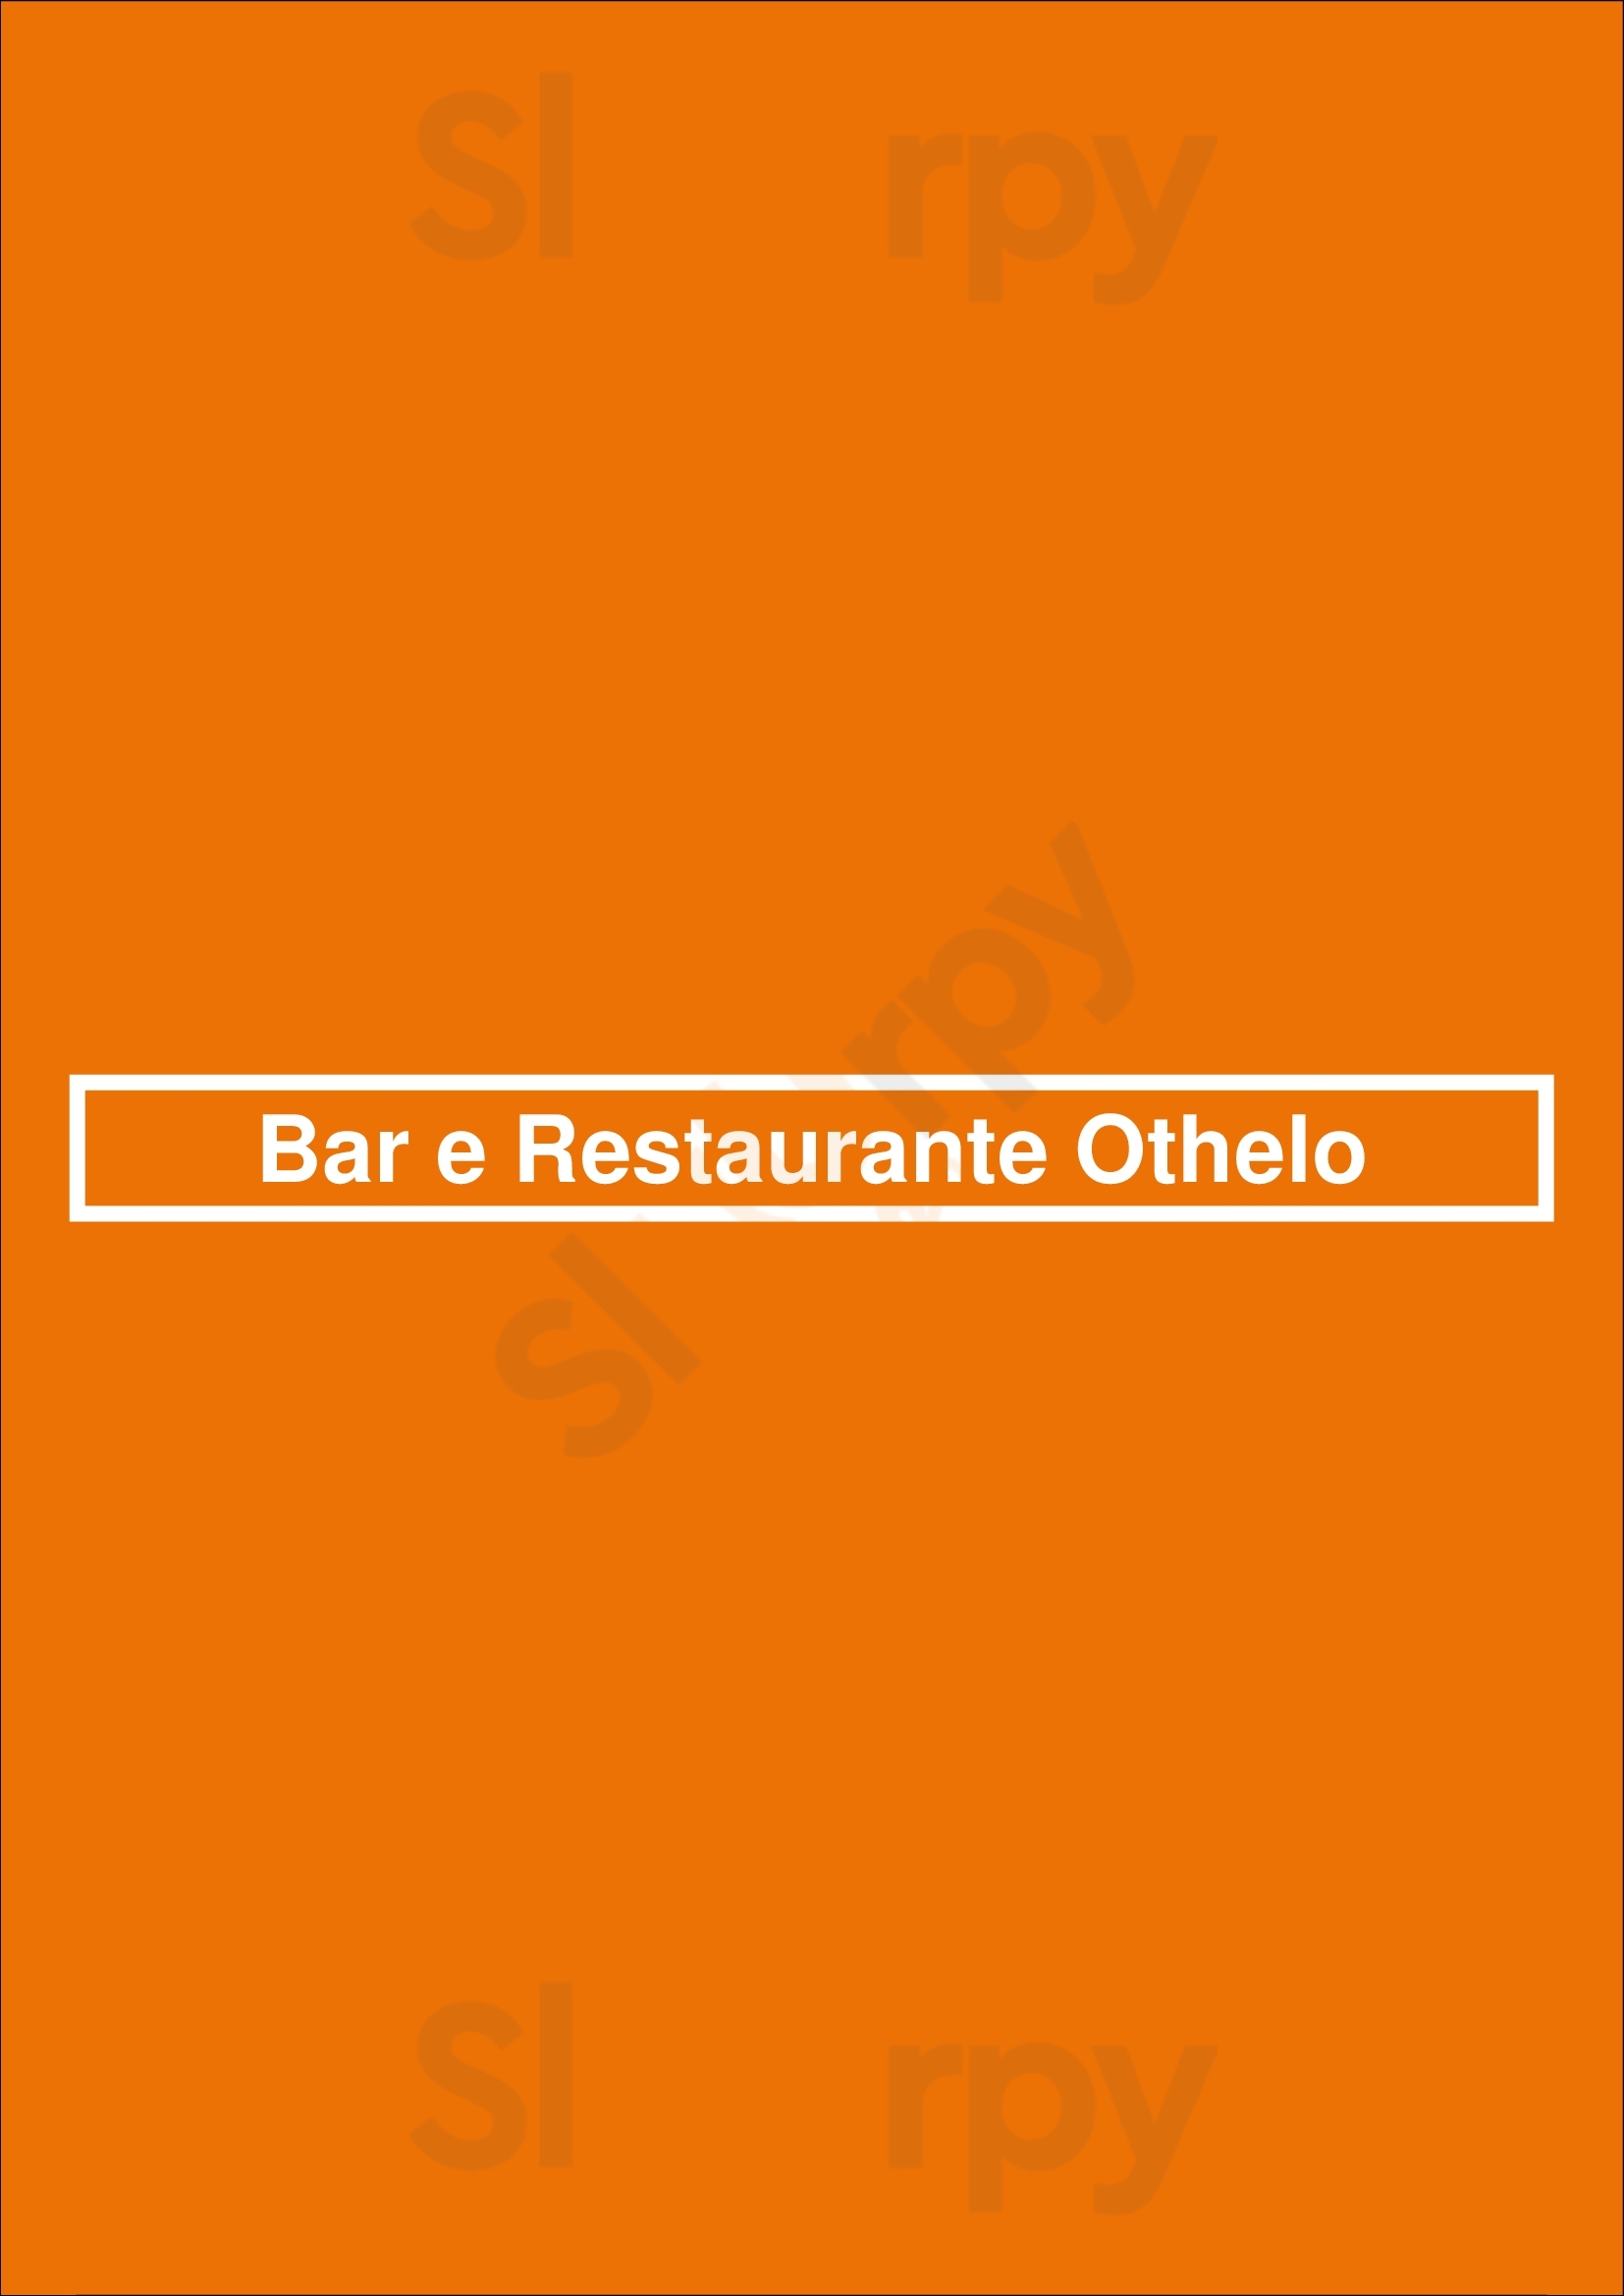 Bar E Restaurante Othelo São Paulo Menu - 1